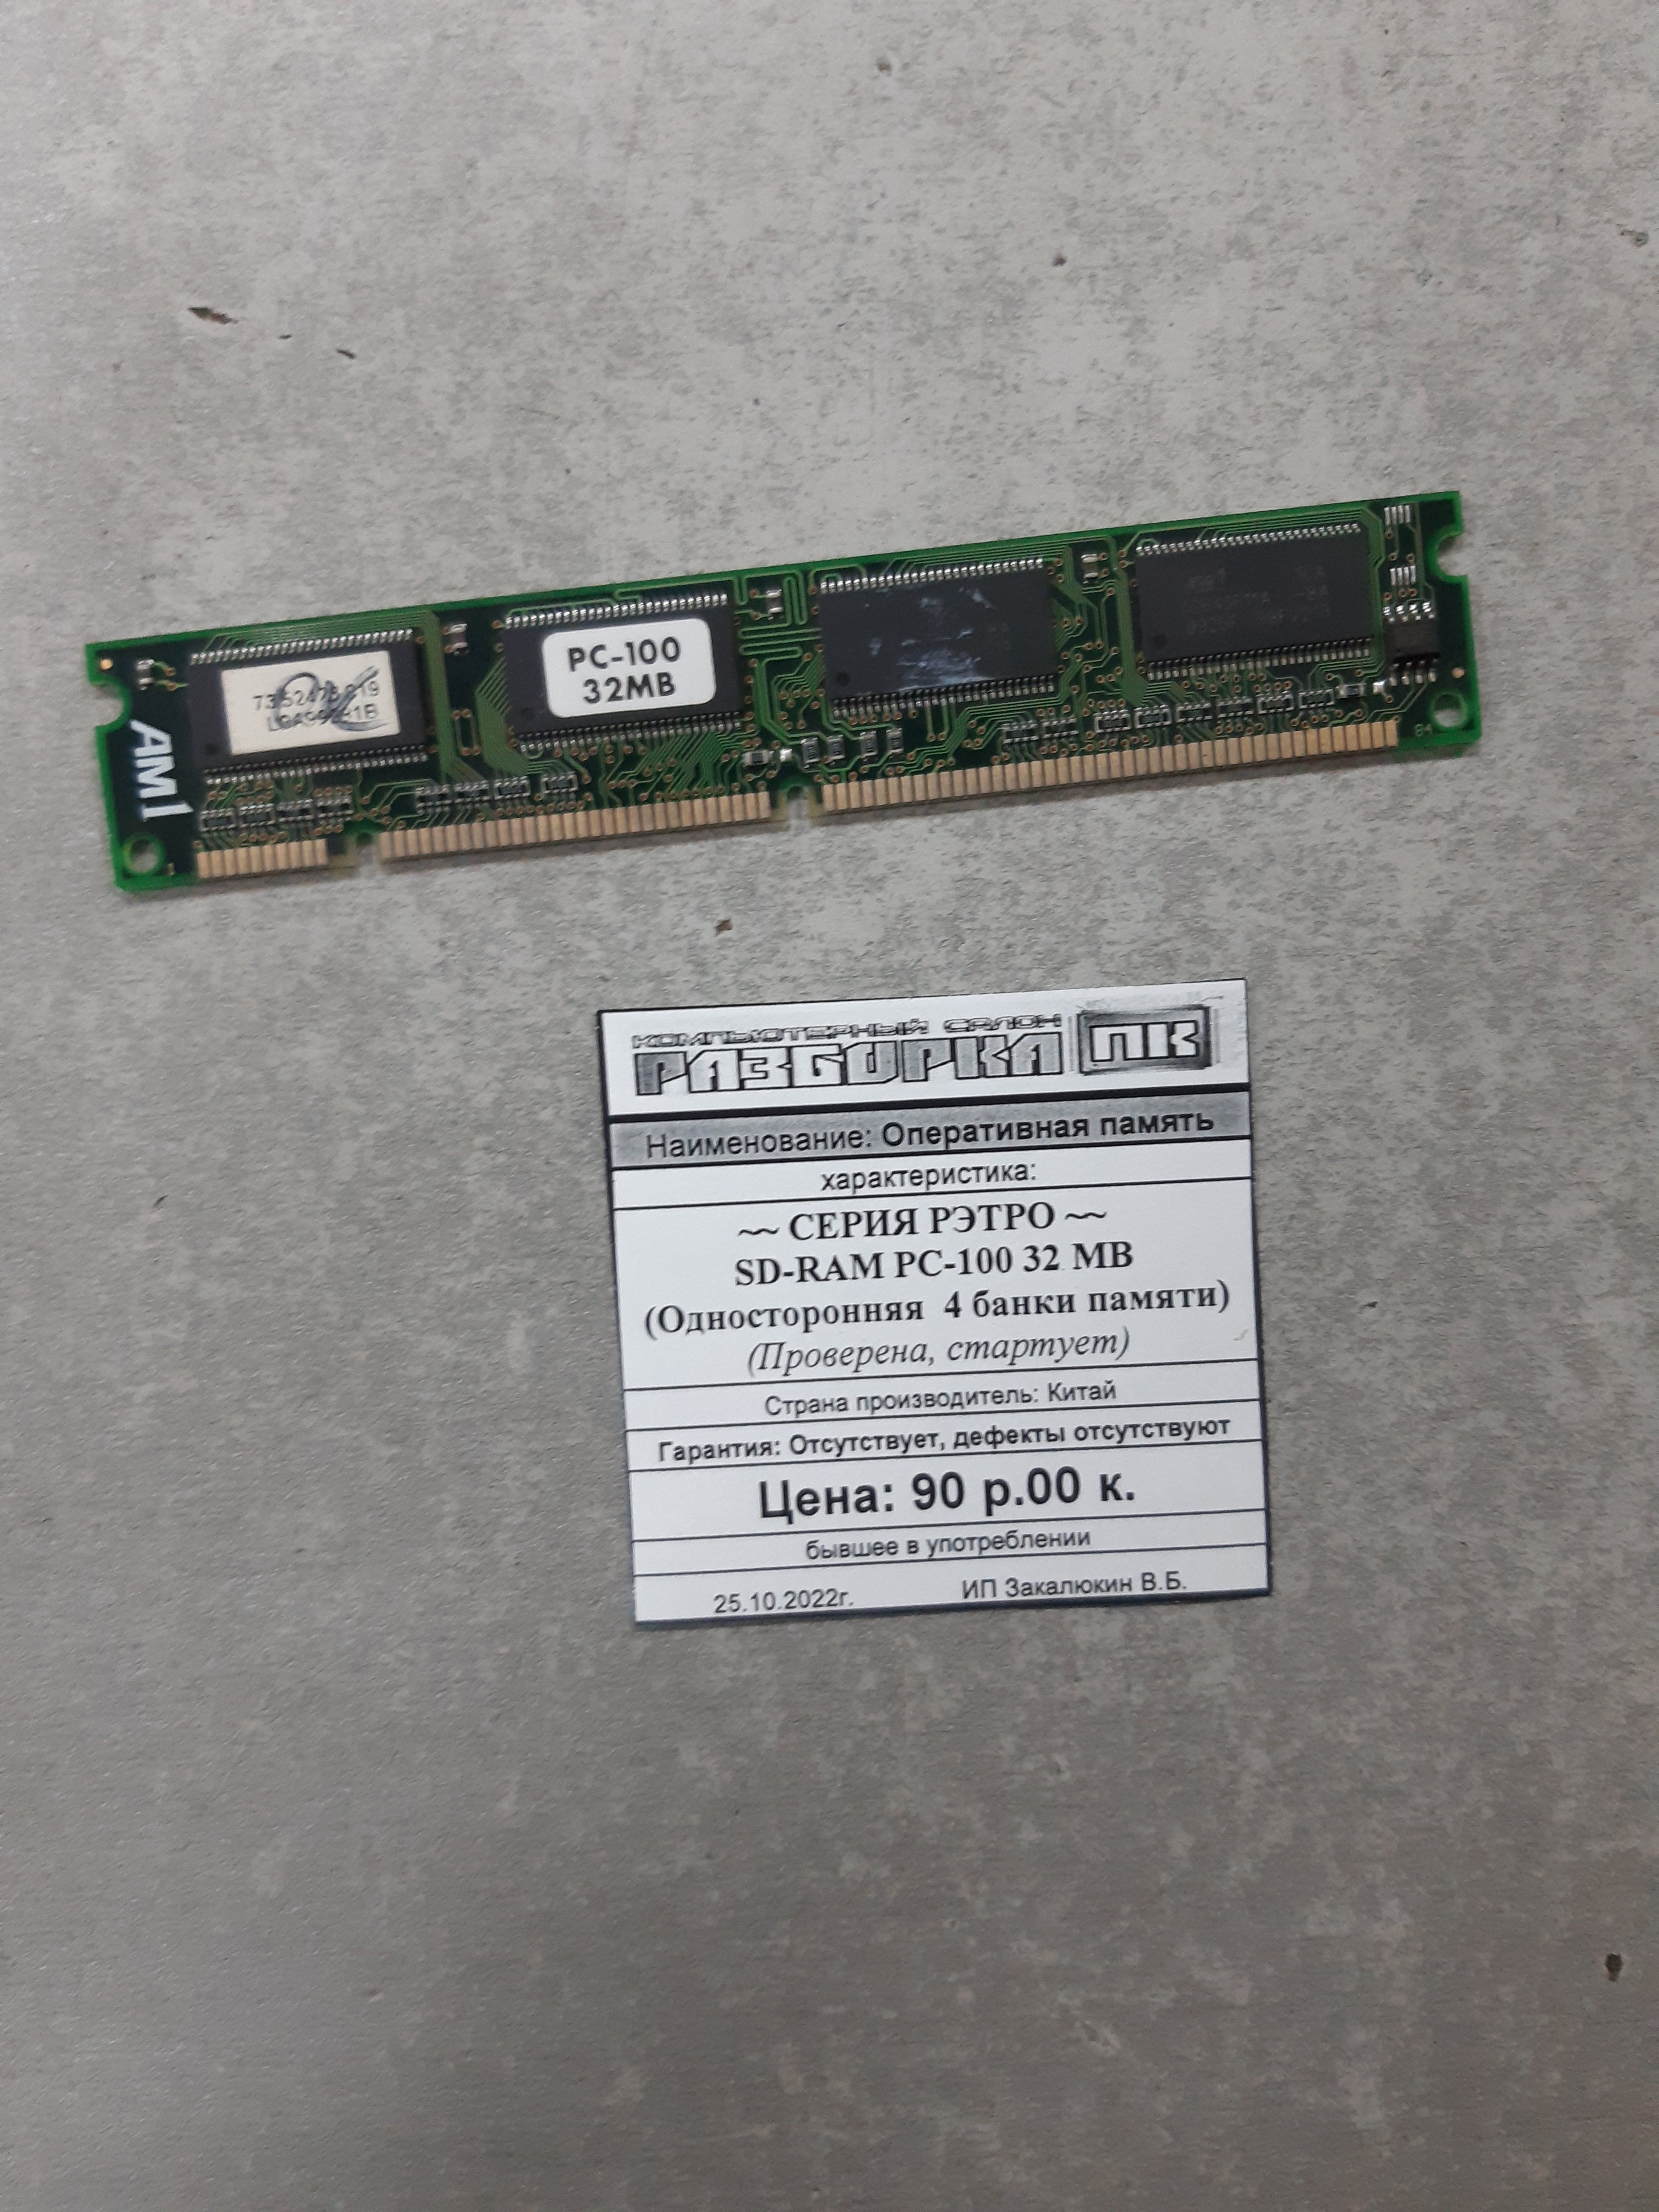 Оперативная память SD-RAM PC-100 32 MB